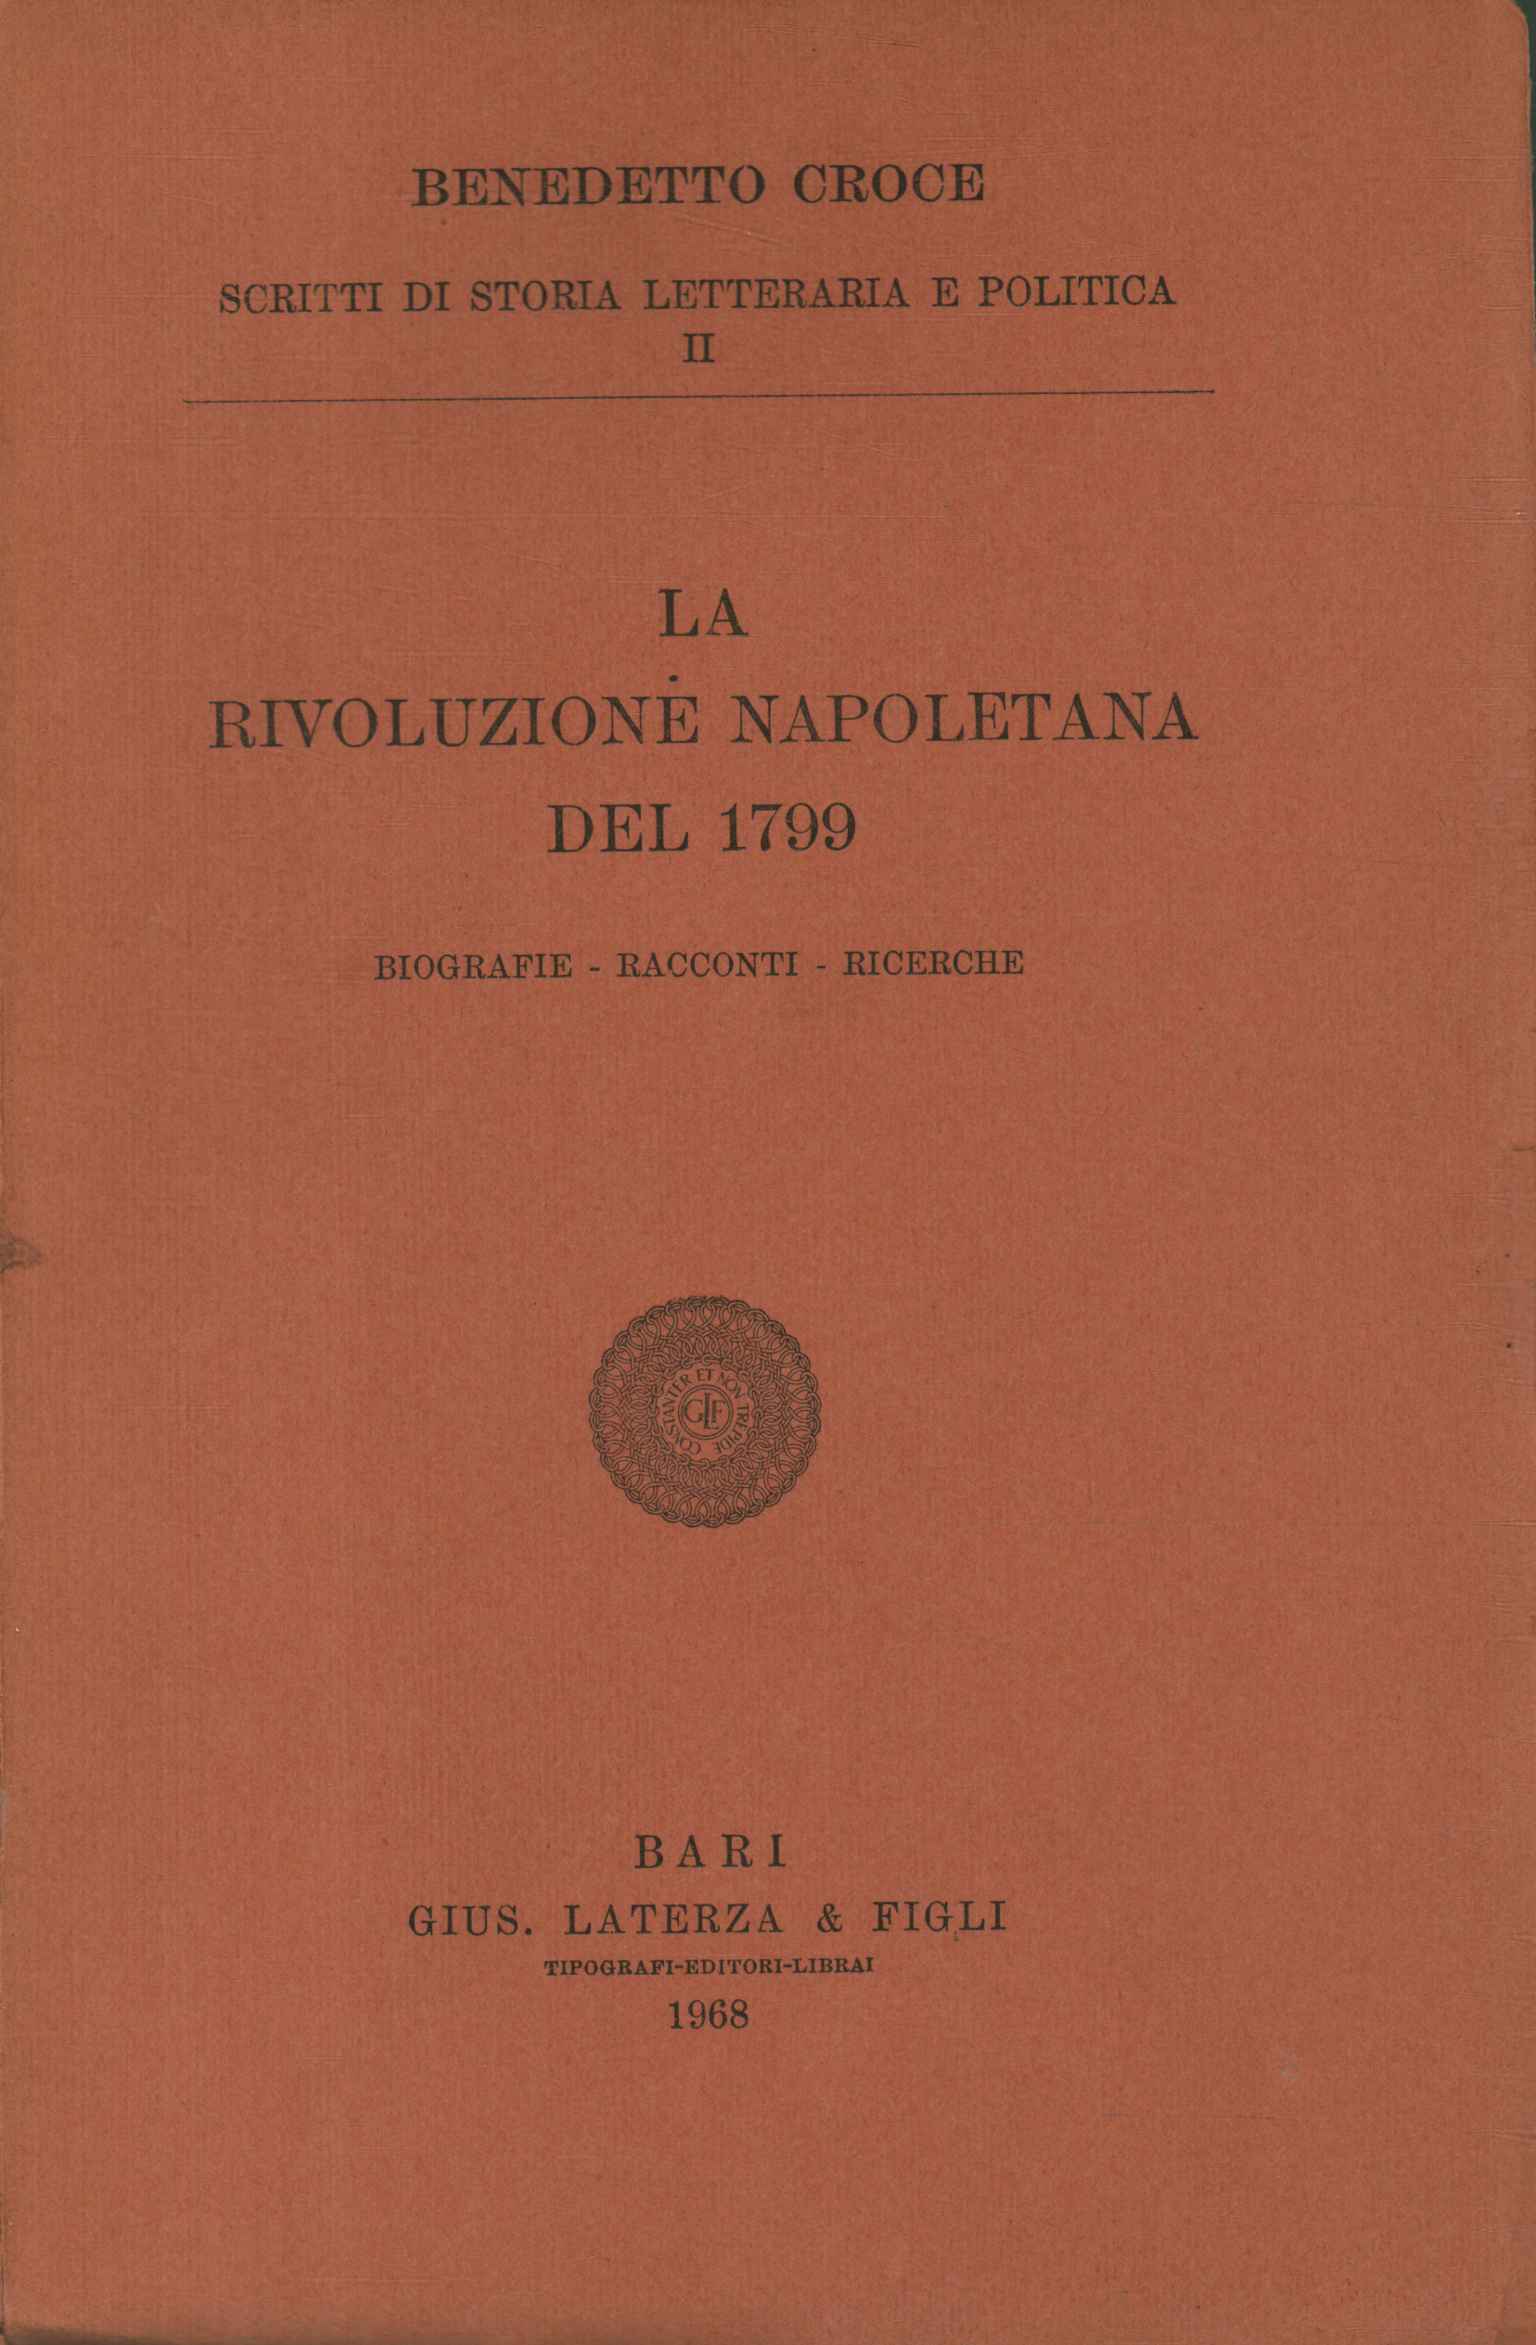 Die neapolitanische Revolution von 1799